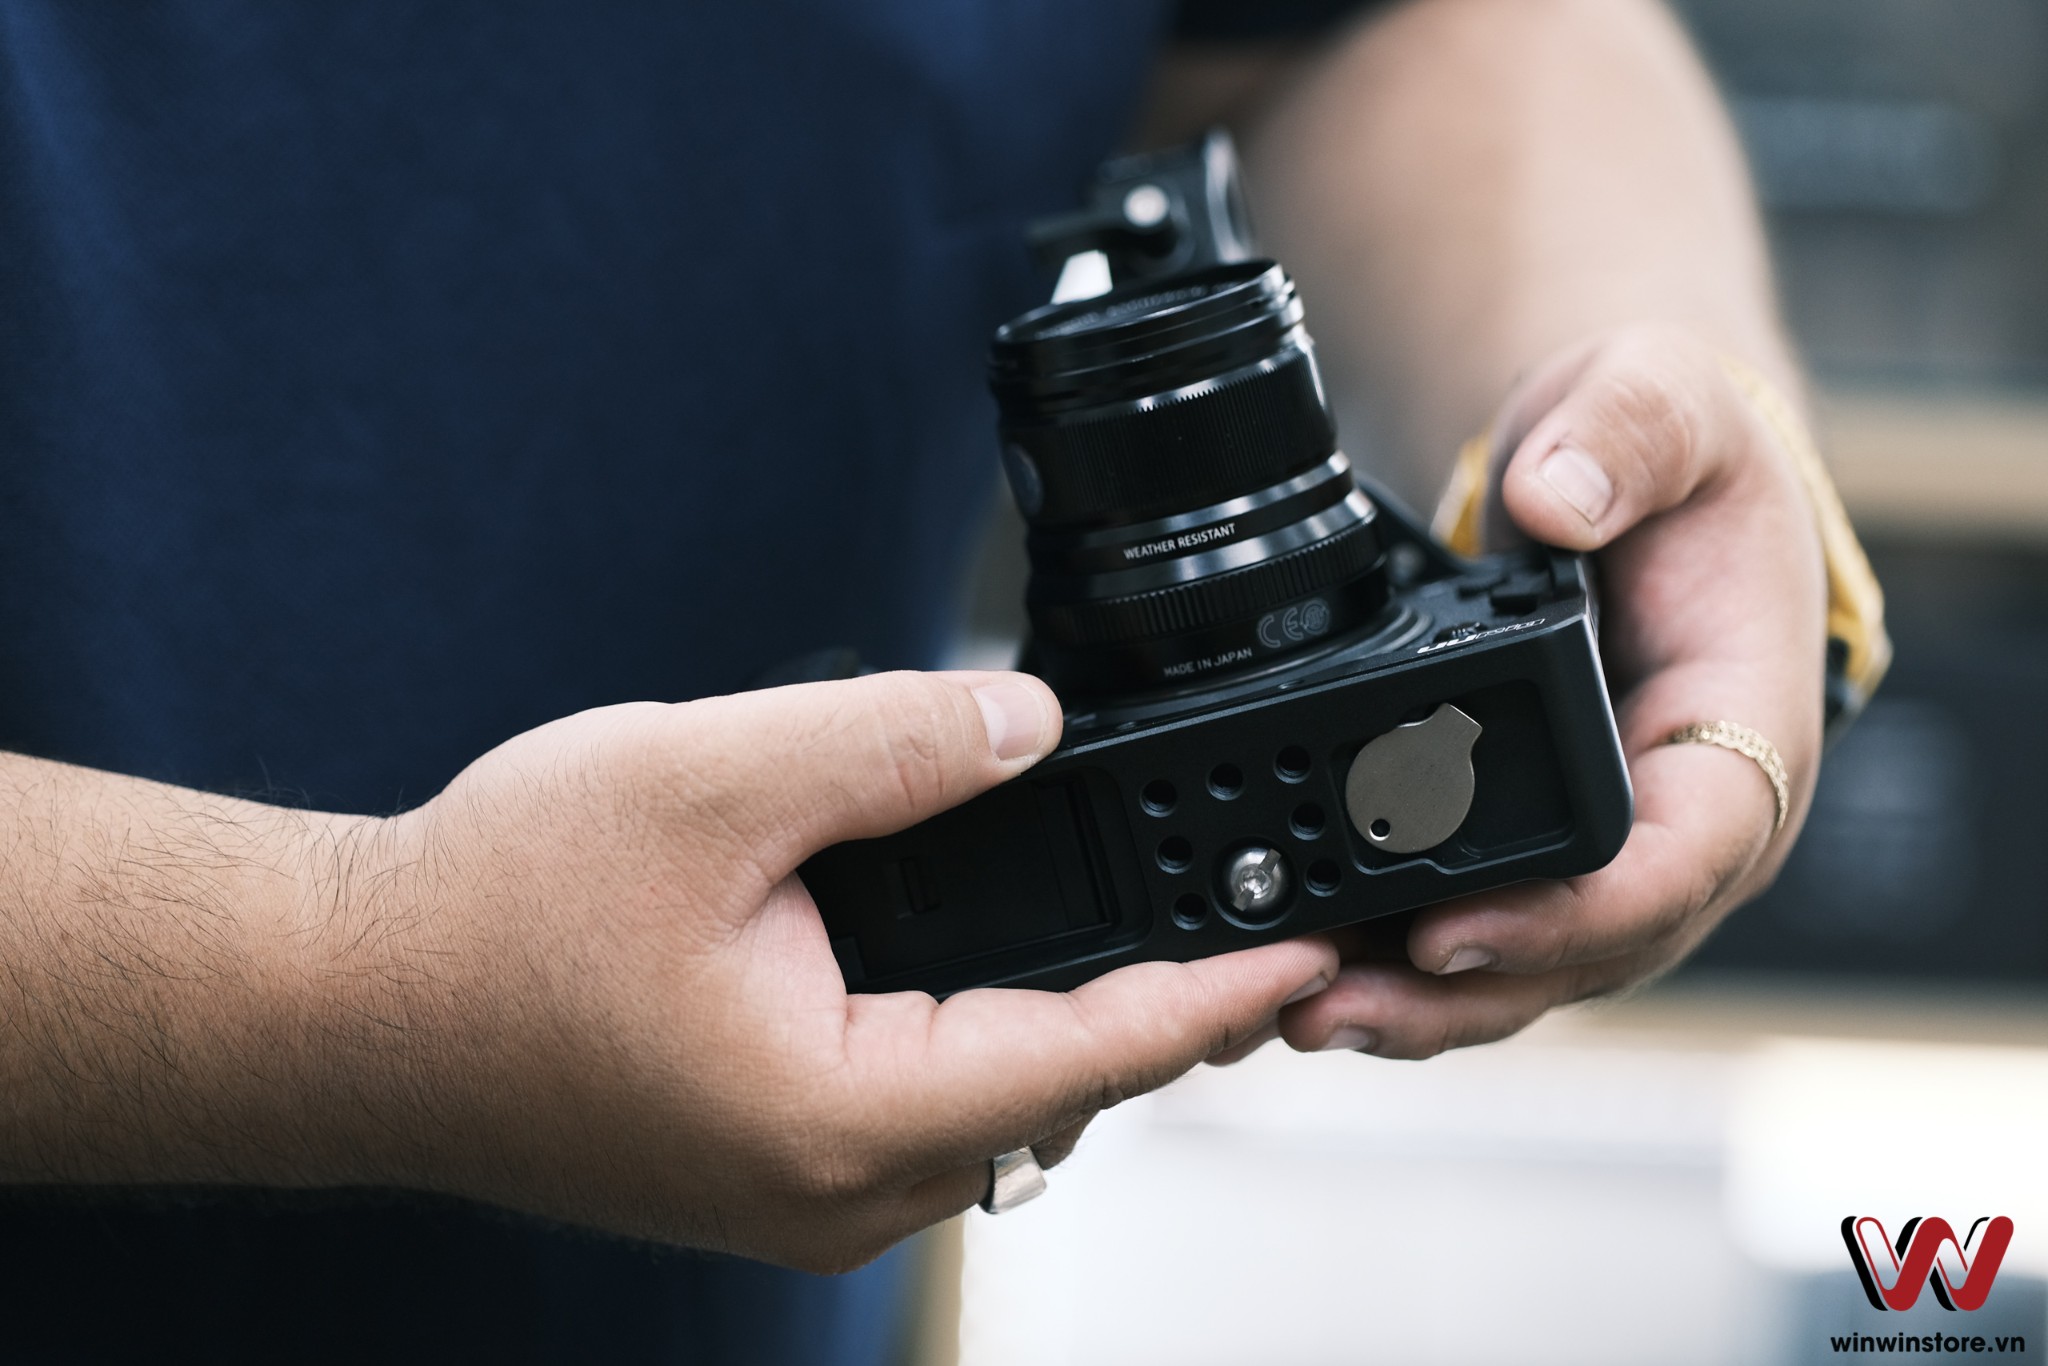 Trên tay bộ khung và tay cầm UUrig cho Fujifilm X-T4: Thoả sức sáng tạo góc quay hơn cho các nhà làm phim